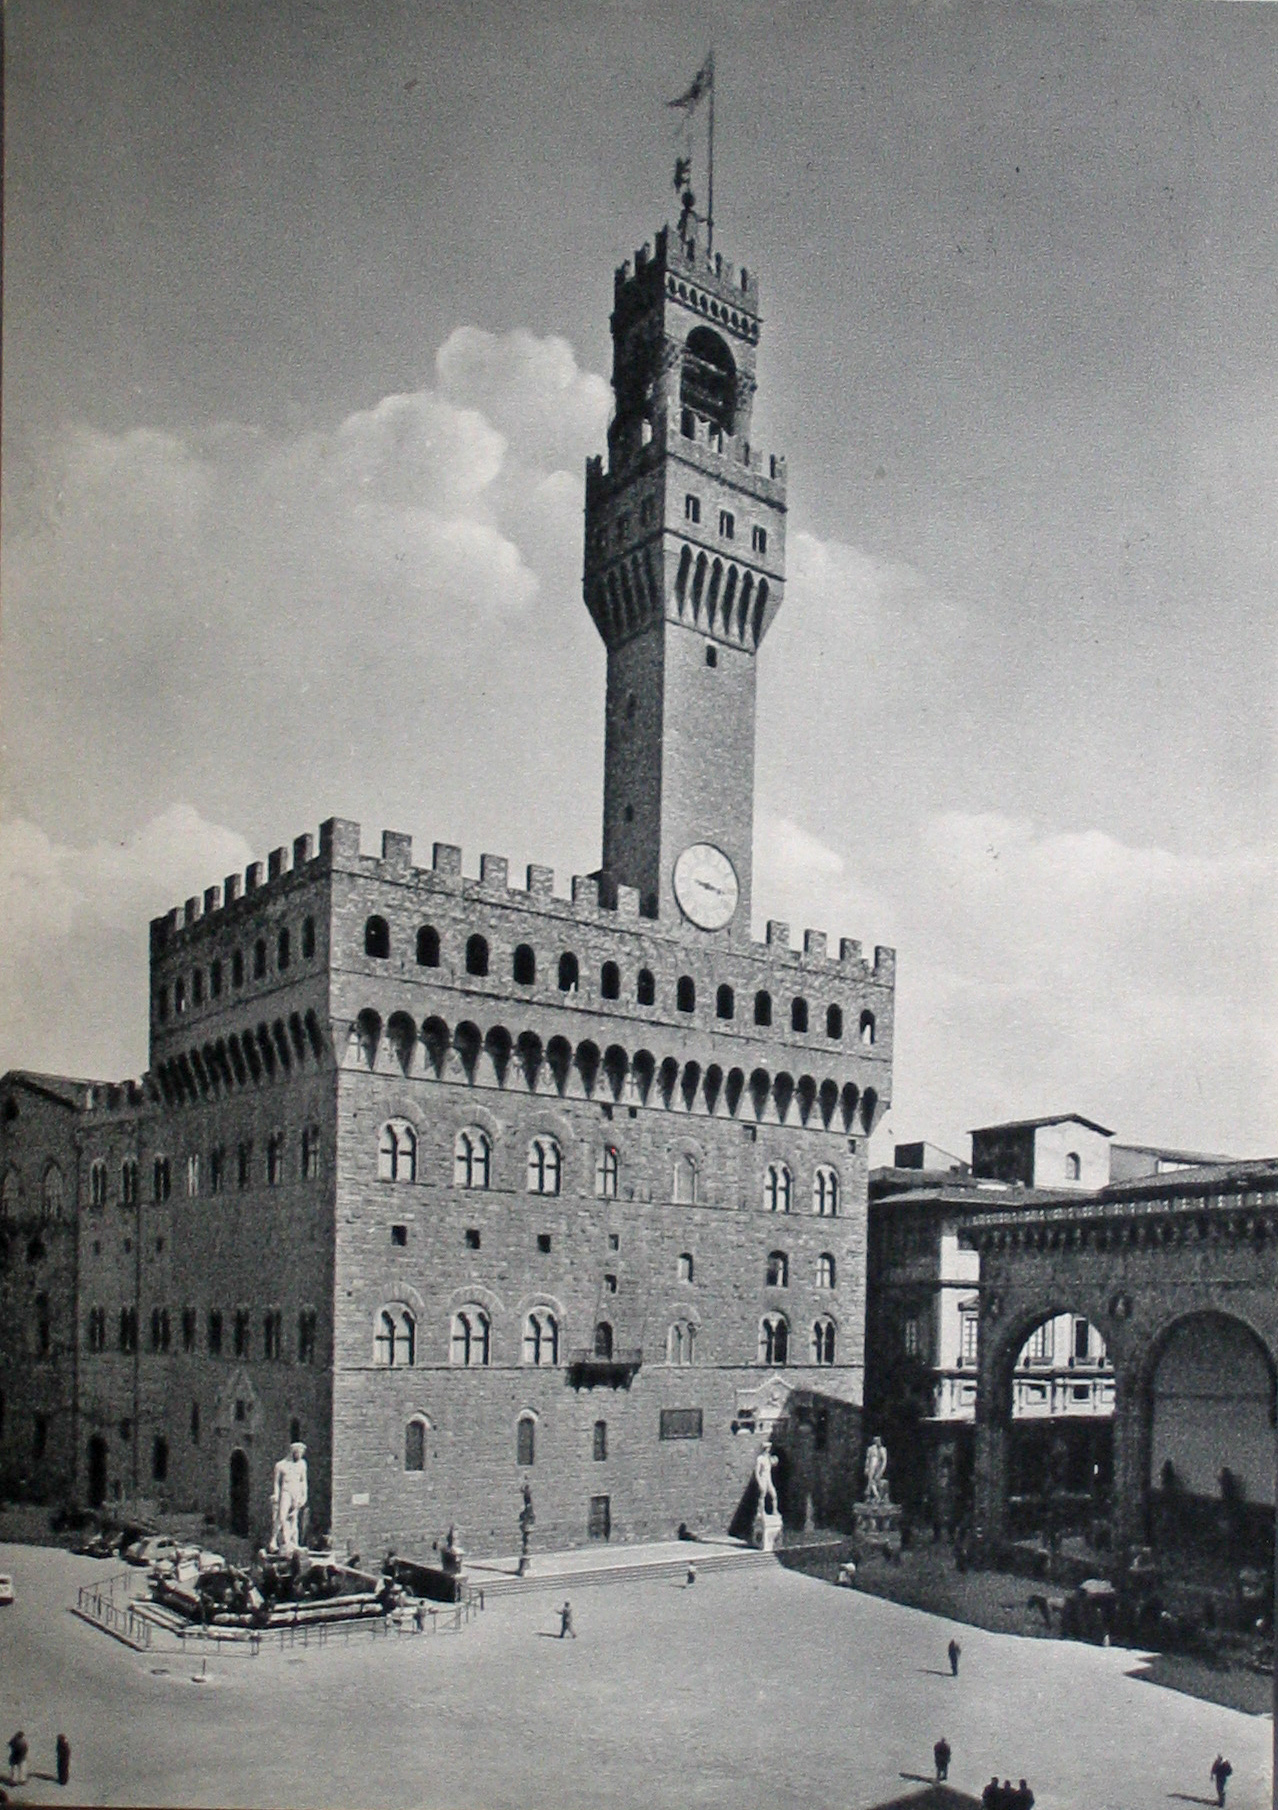 Firenze, Palazzo Vecchio